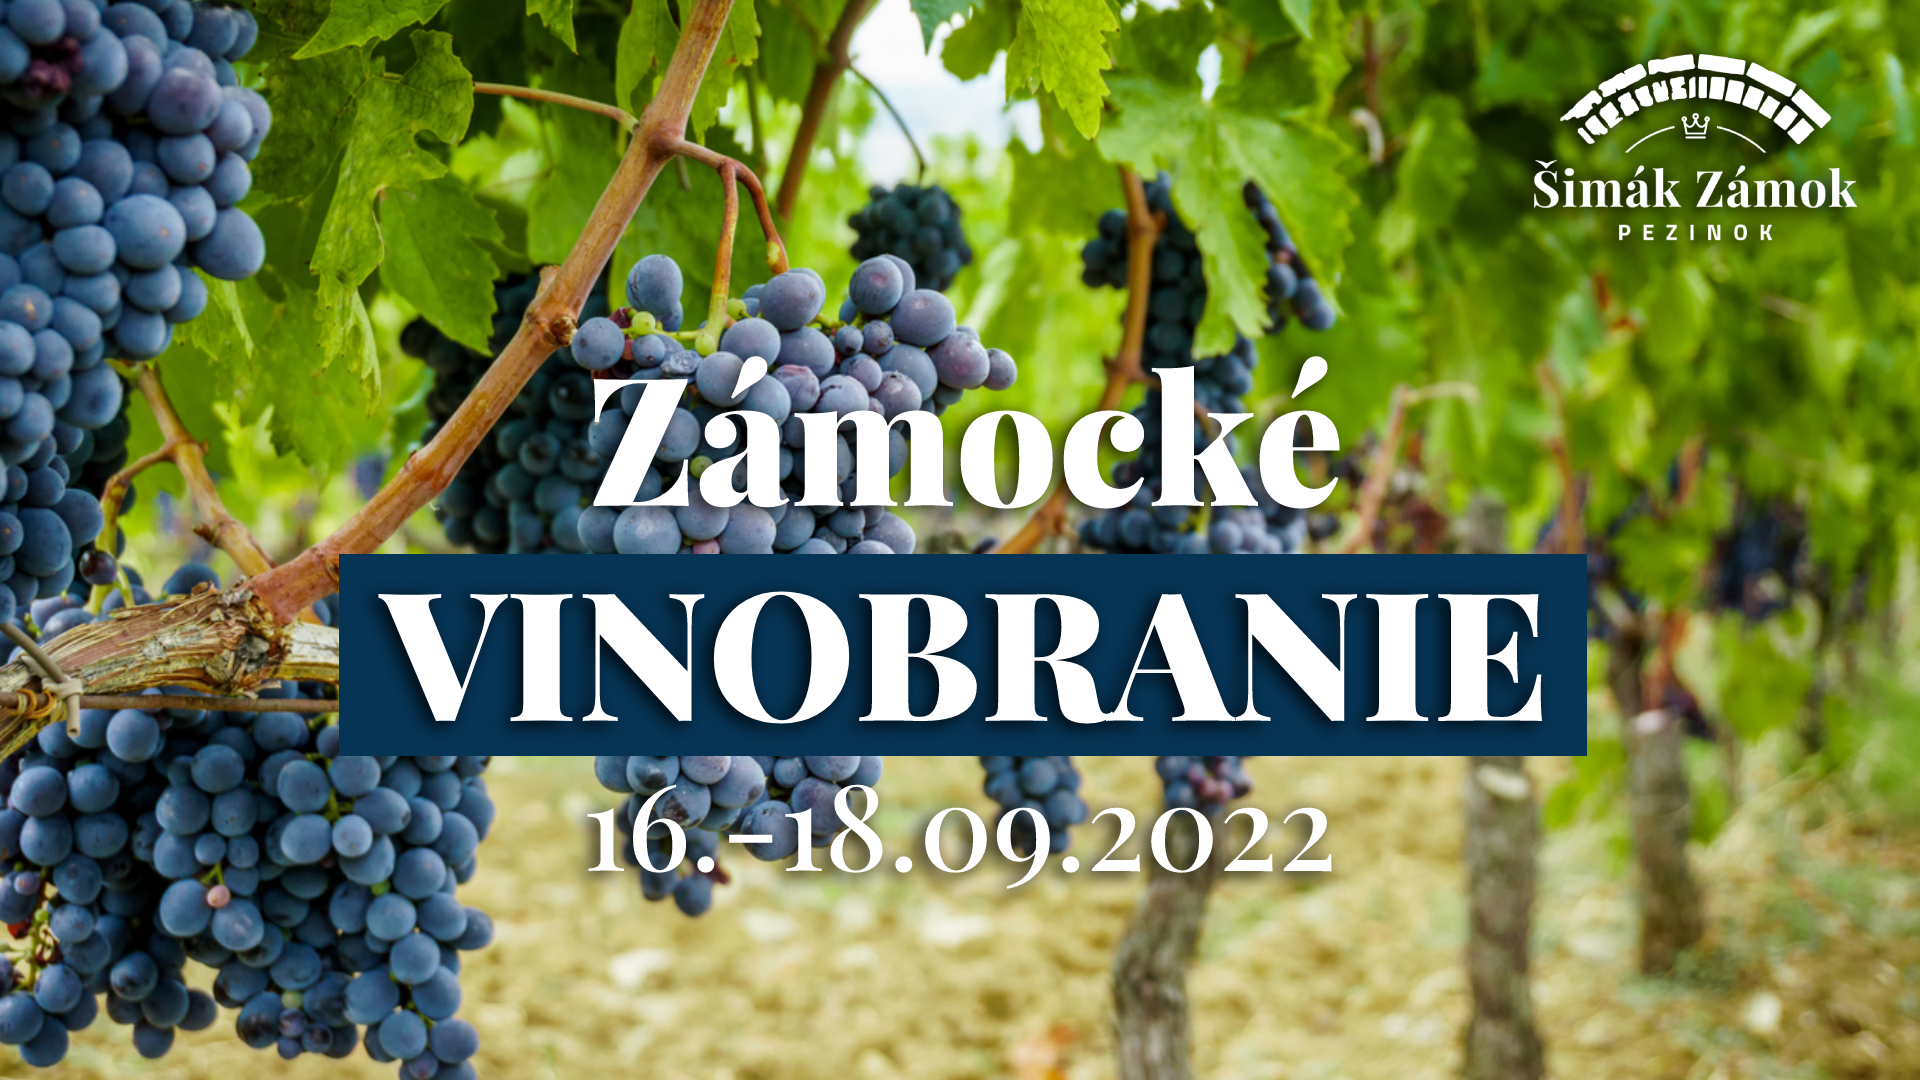 Zámocké vinobranie 2022 Pezinok